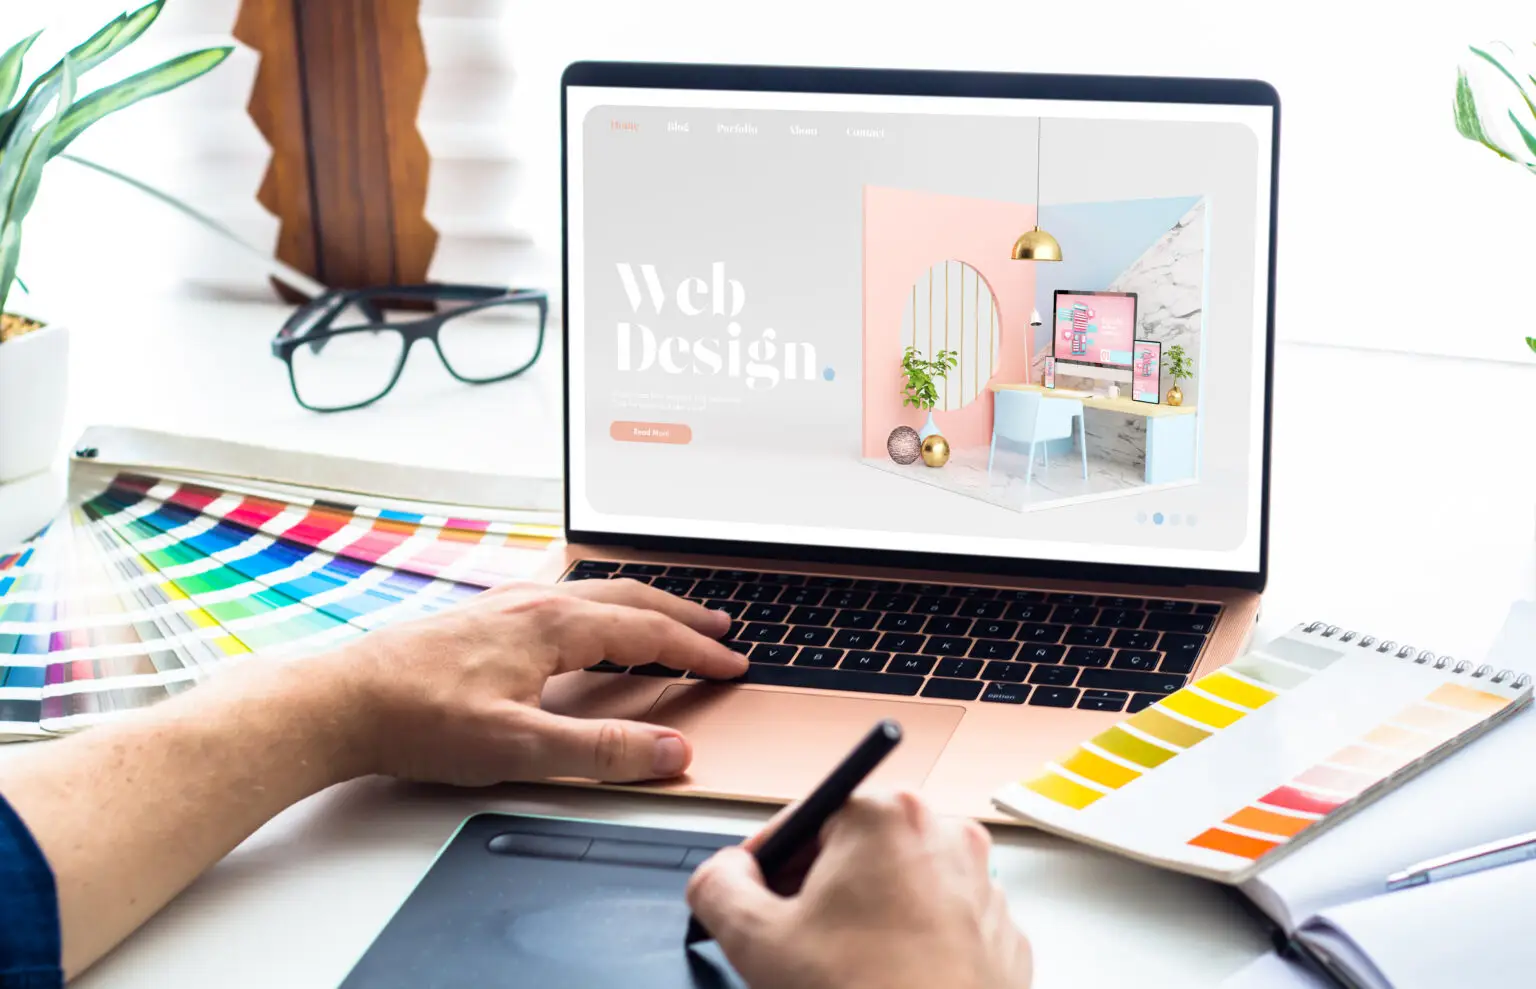 PerformAds Web Design - Kreative und professionelle Webdesign-Dienstleistungen für ansprechende Websites.